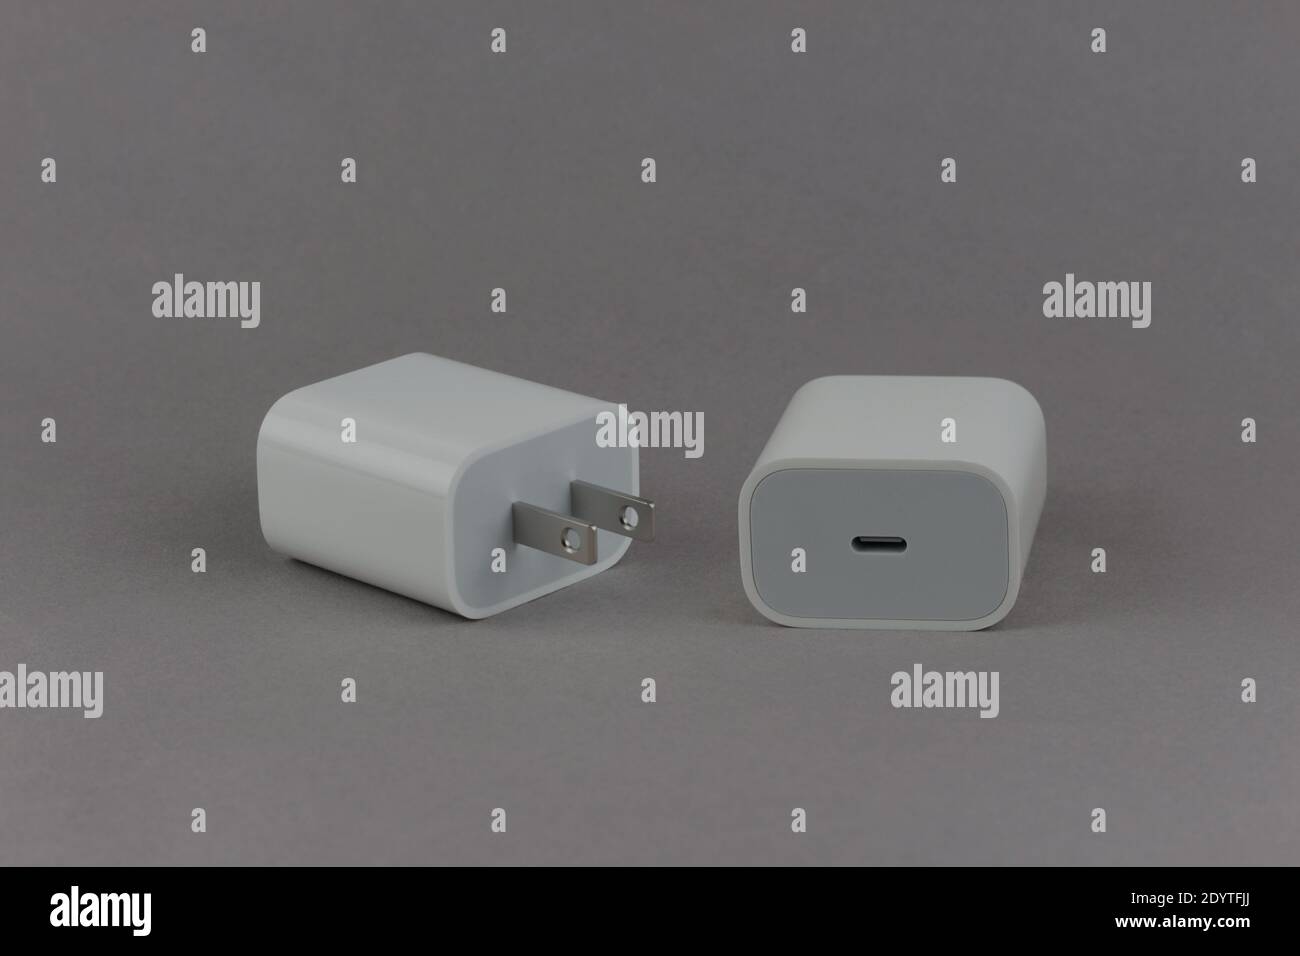 Adaptateur secteur blanc USB-C de 20 watts, avant et arrière, sur fond gris Banque D'Images